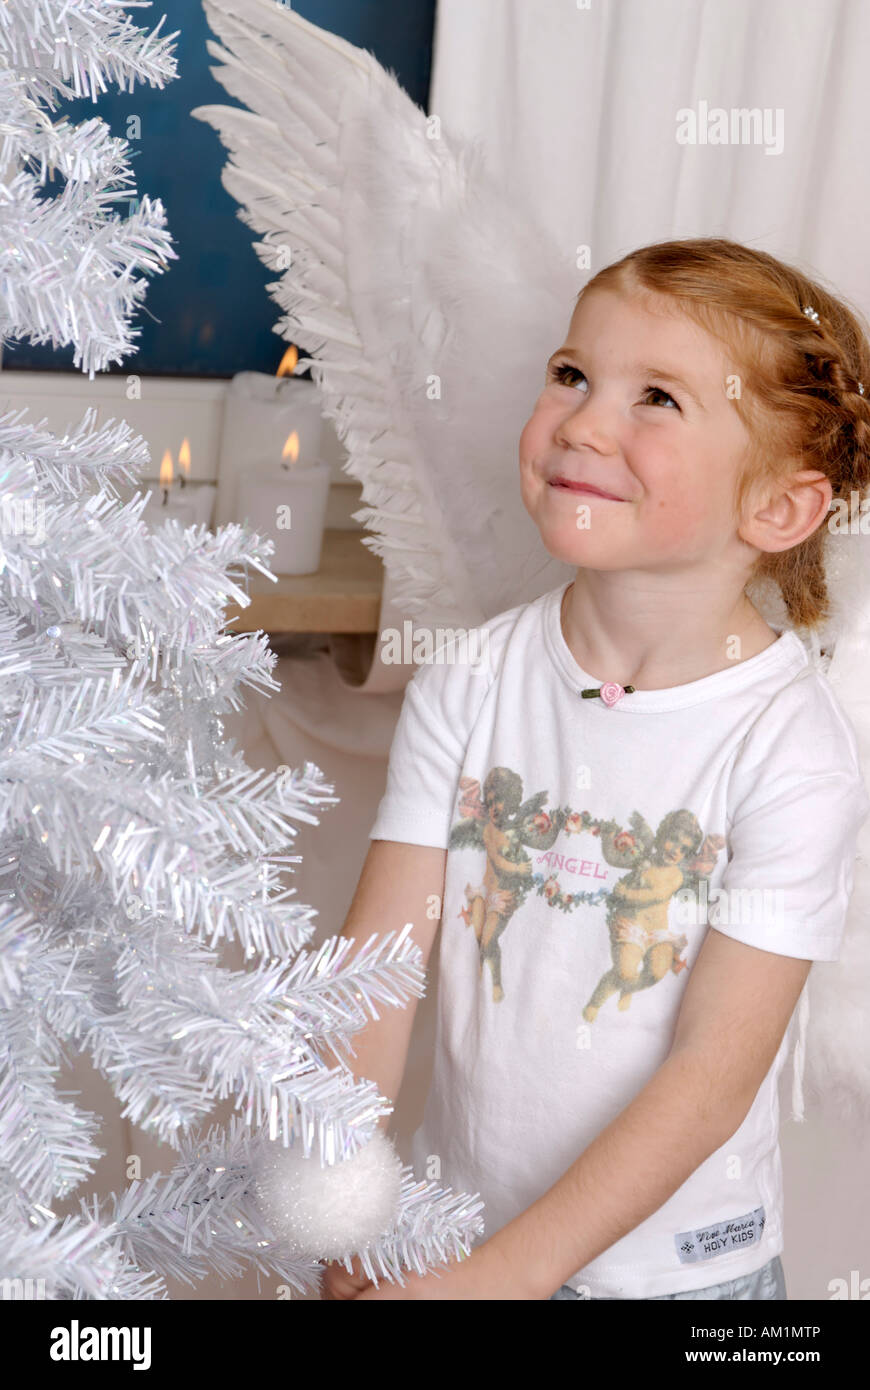 Child decorates a white christmas tree Stock Photo